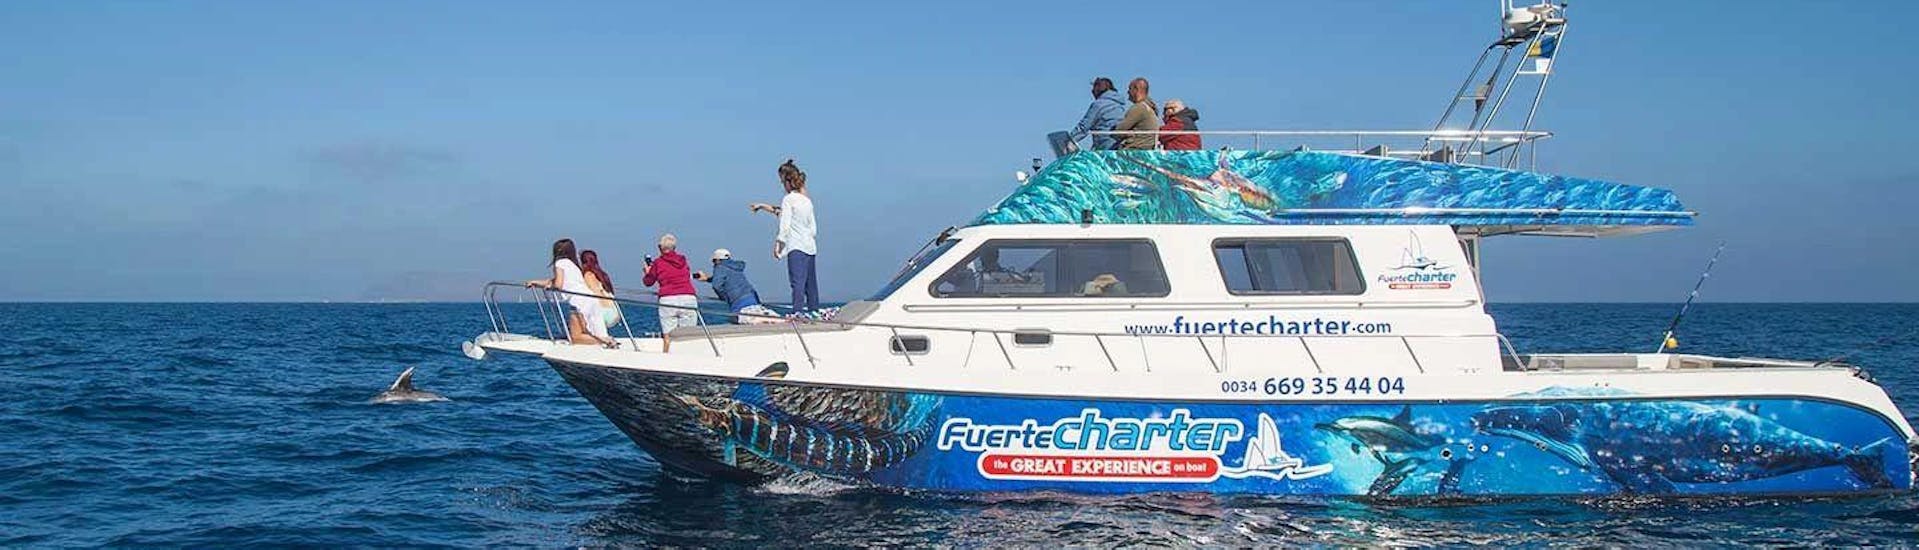 Combo Boat Tour "Cetaceans" - Lobos Island.